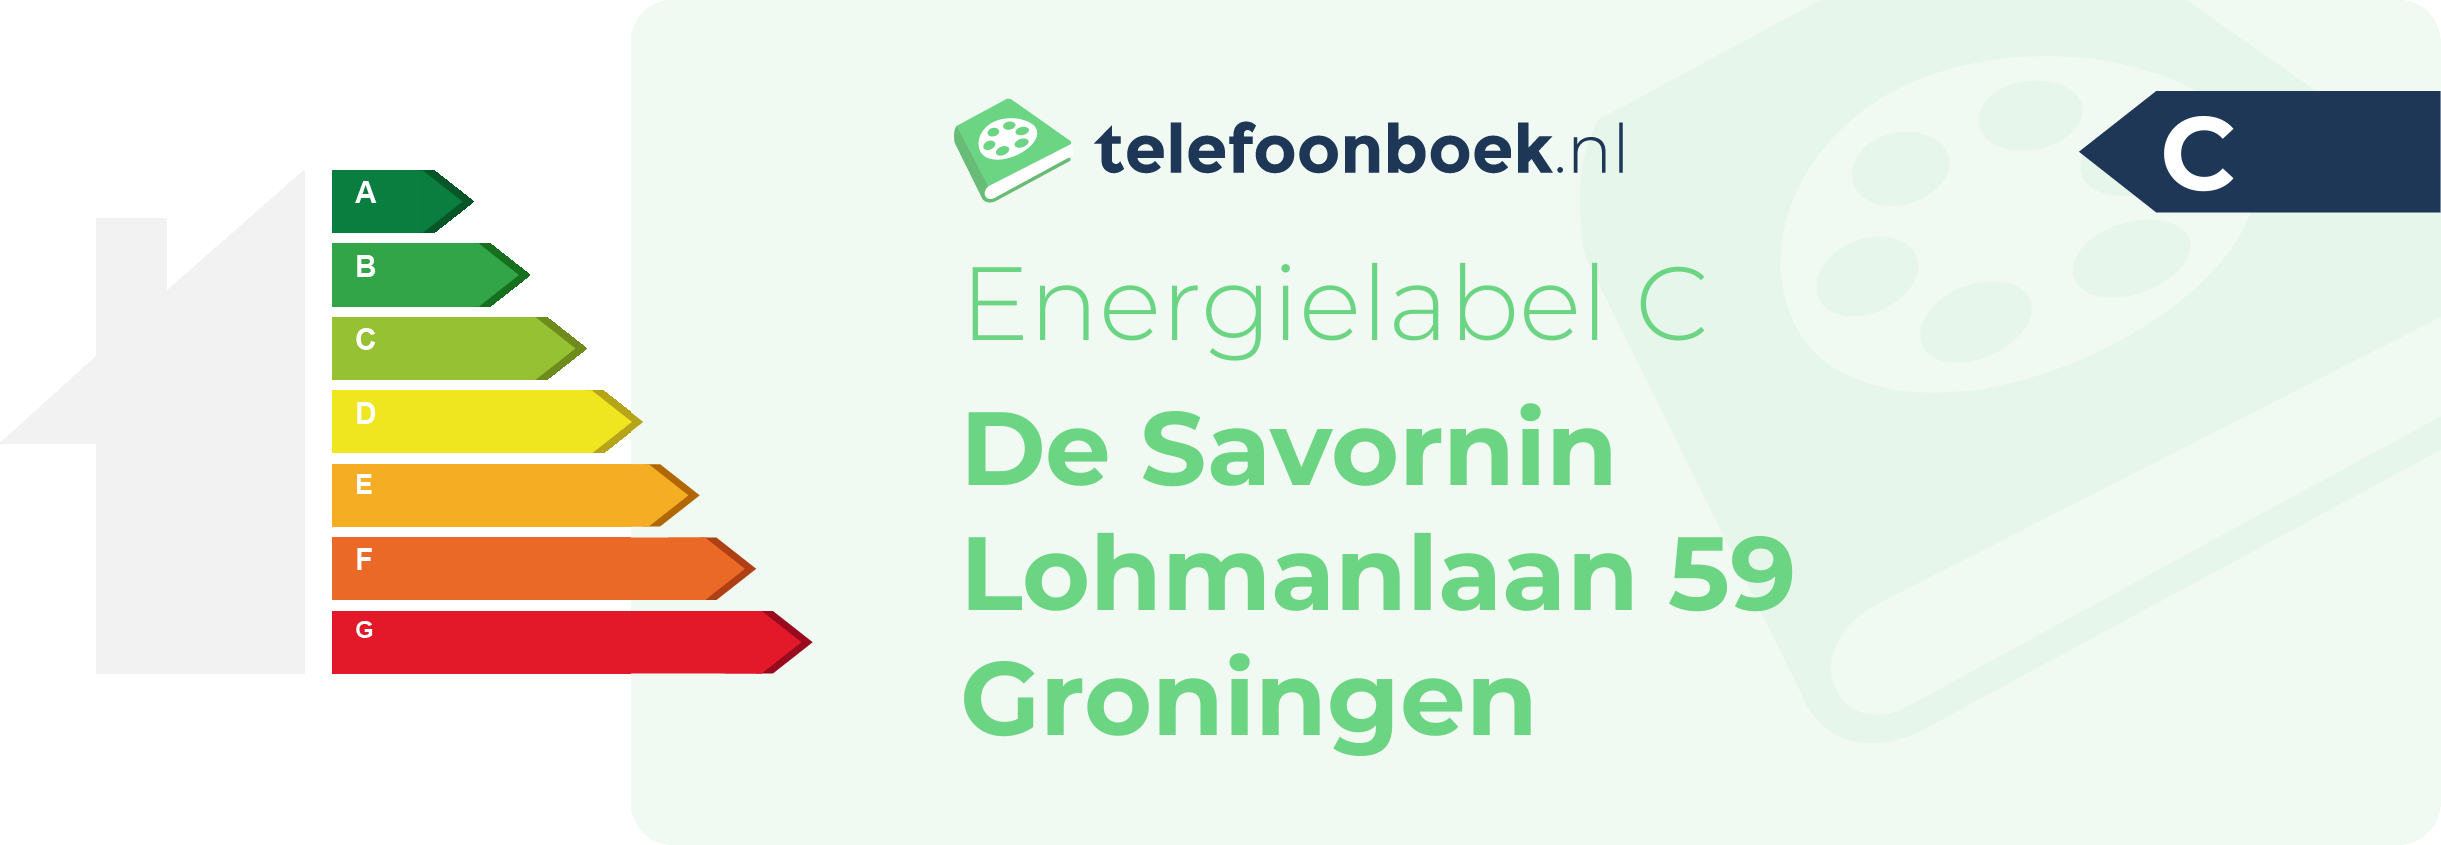 Energielabel De Savornin Lohmanlaan 59 Groningen